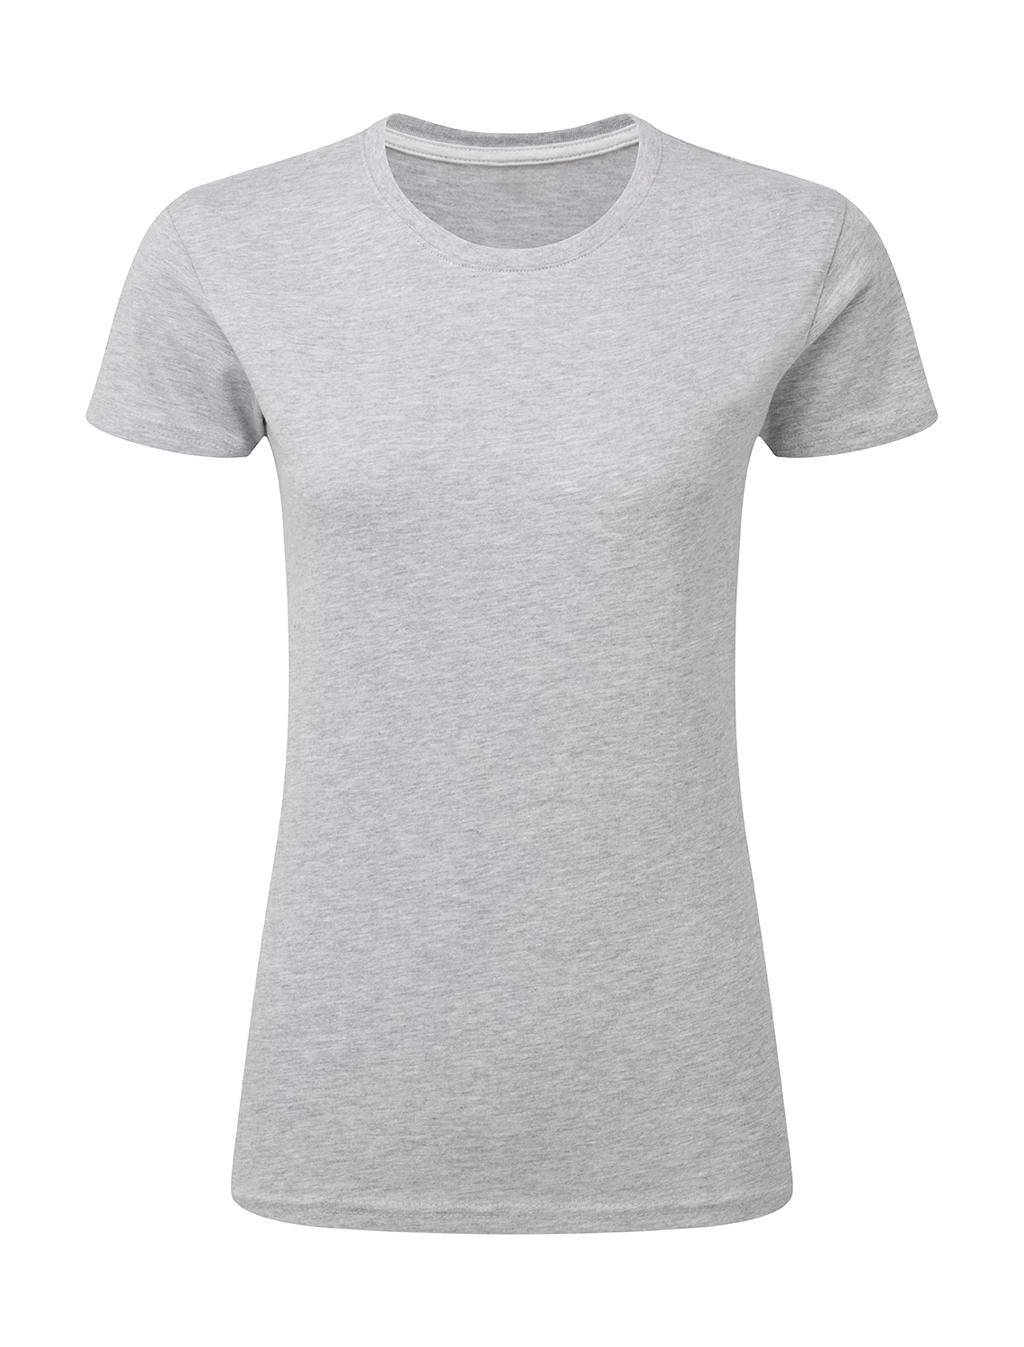 Dokonale potlačiteľné dámske tričko bez štítku - light oxford